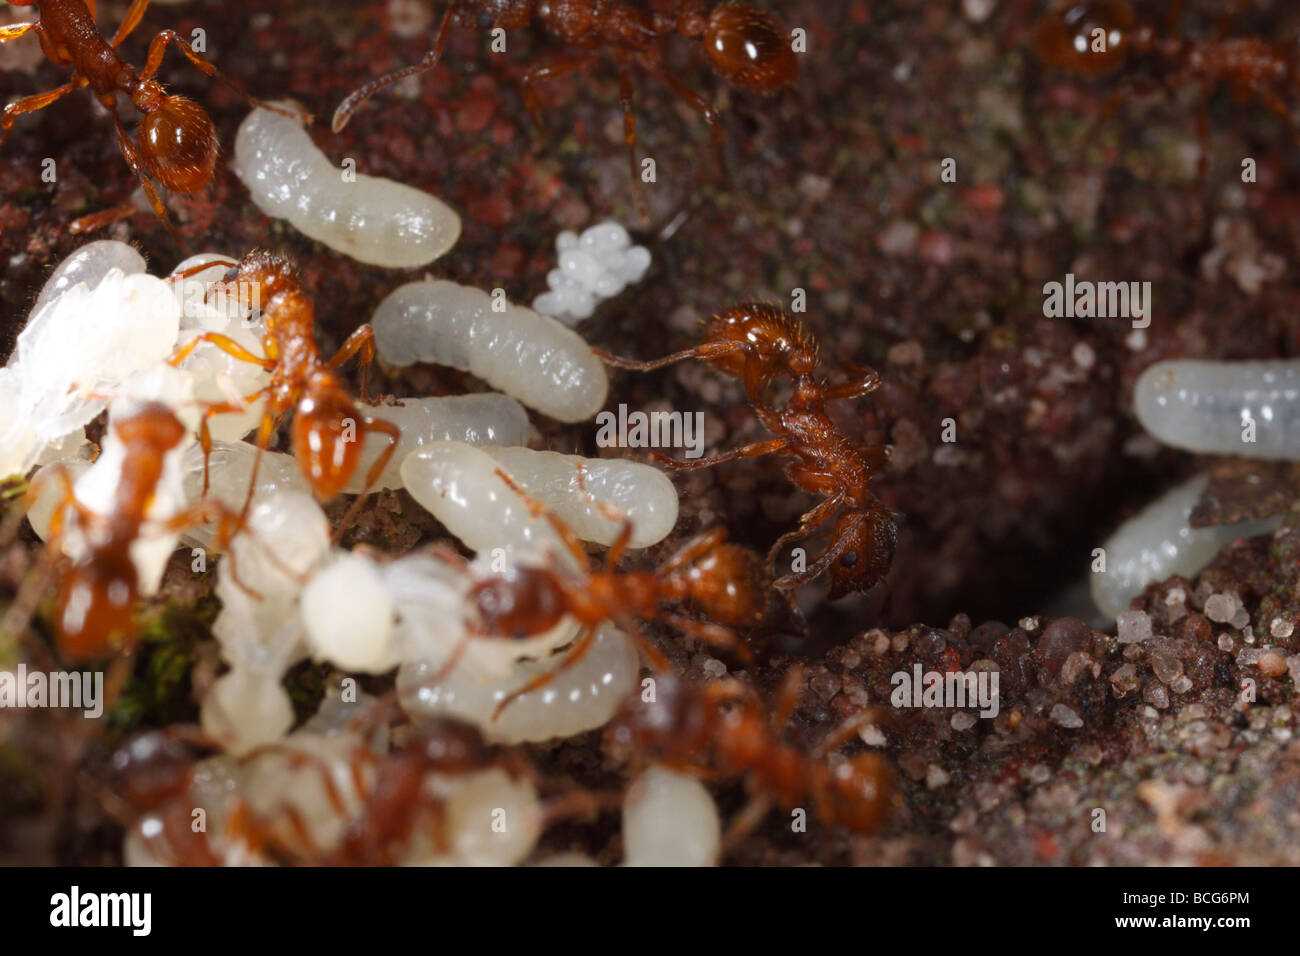 Le formiche del genere Myrmica portando loro le larve e le pupe torna la metropolitana dopo il loro nido è stato disturbato. Foto Stock